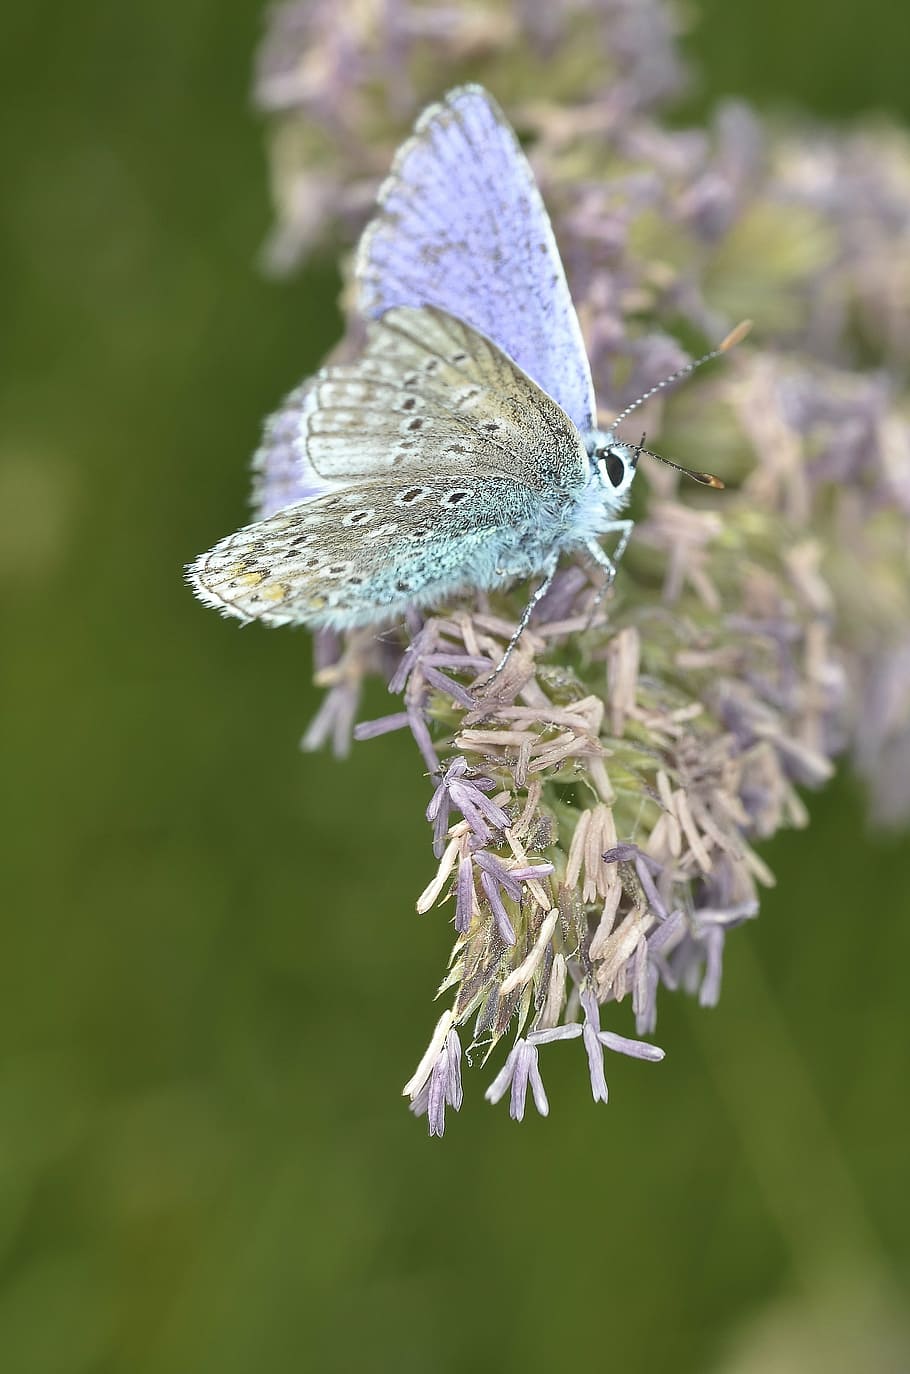 comum, azul, borboleta empoleirar-se, roxo, flor, dia, fotografia de close-up, borboleta, macro, inseto